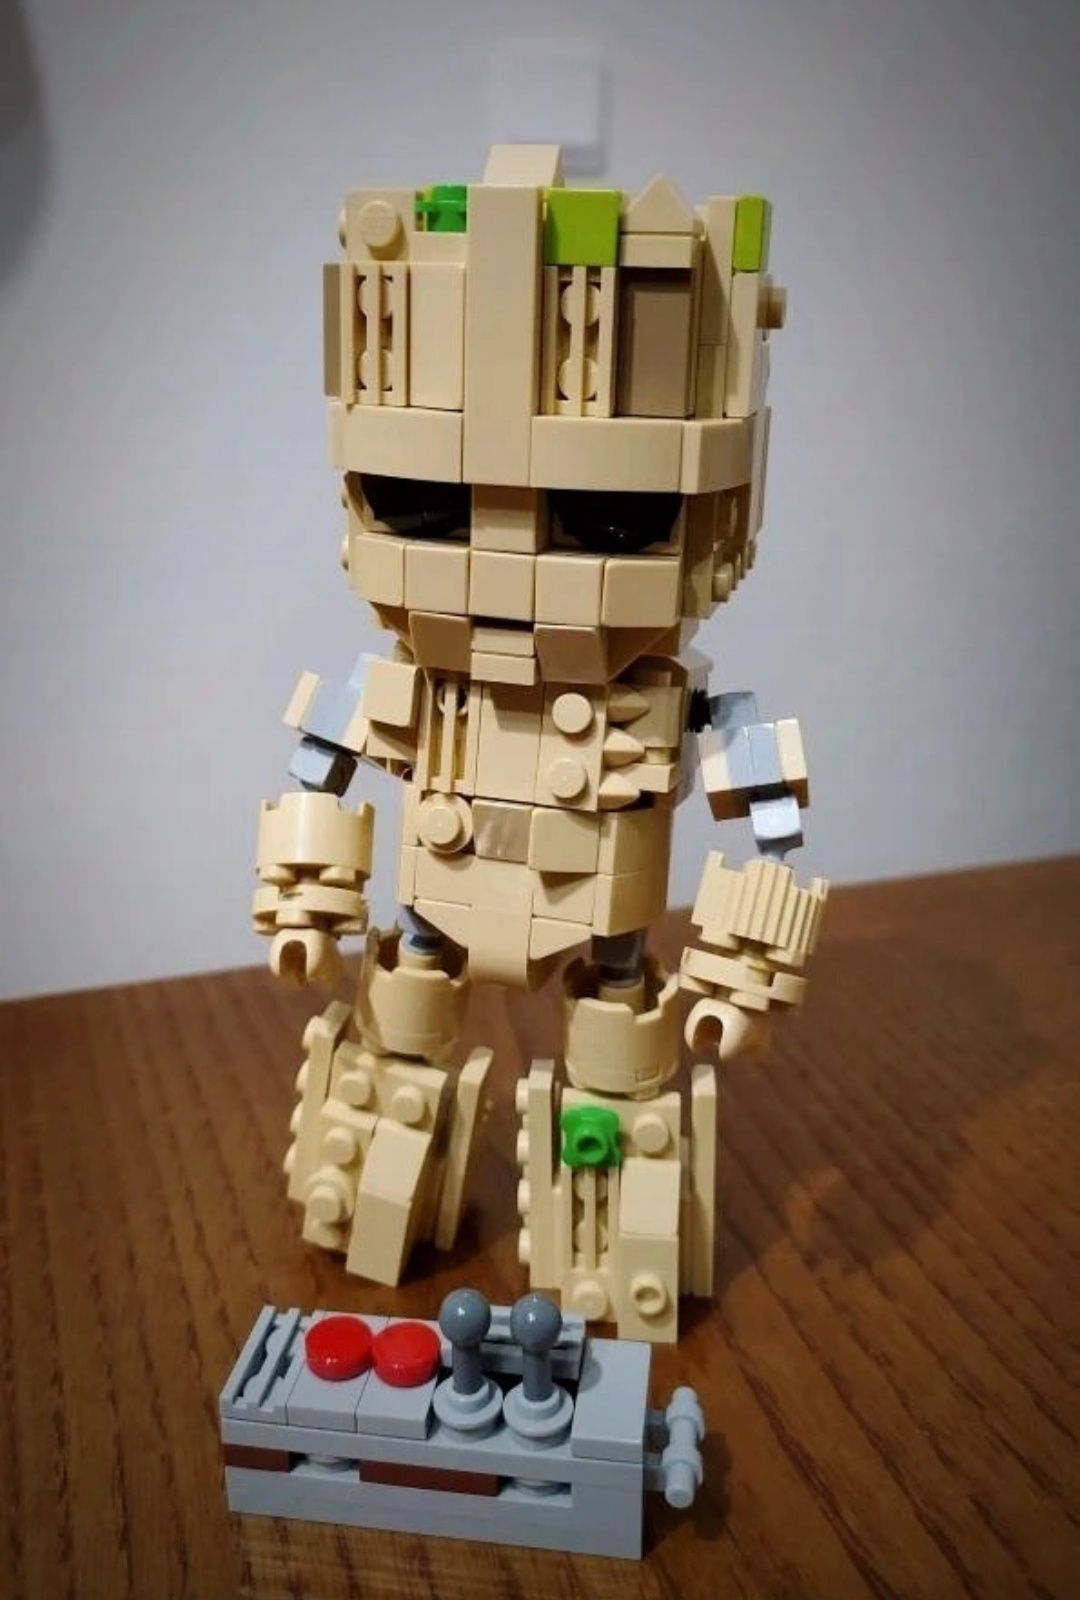 LEGO Baby Groot (MOC)